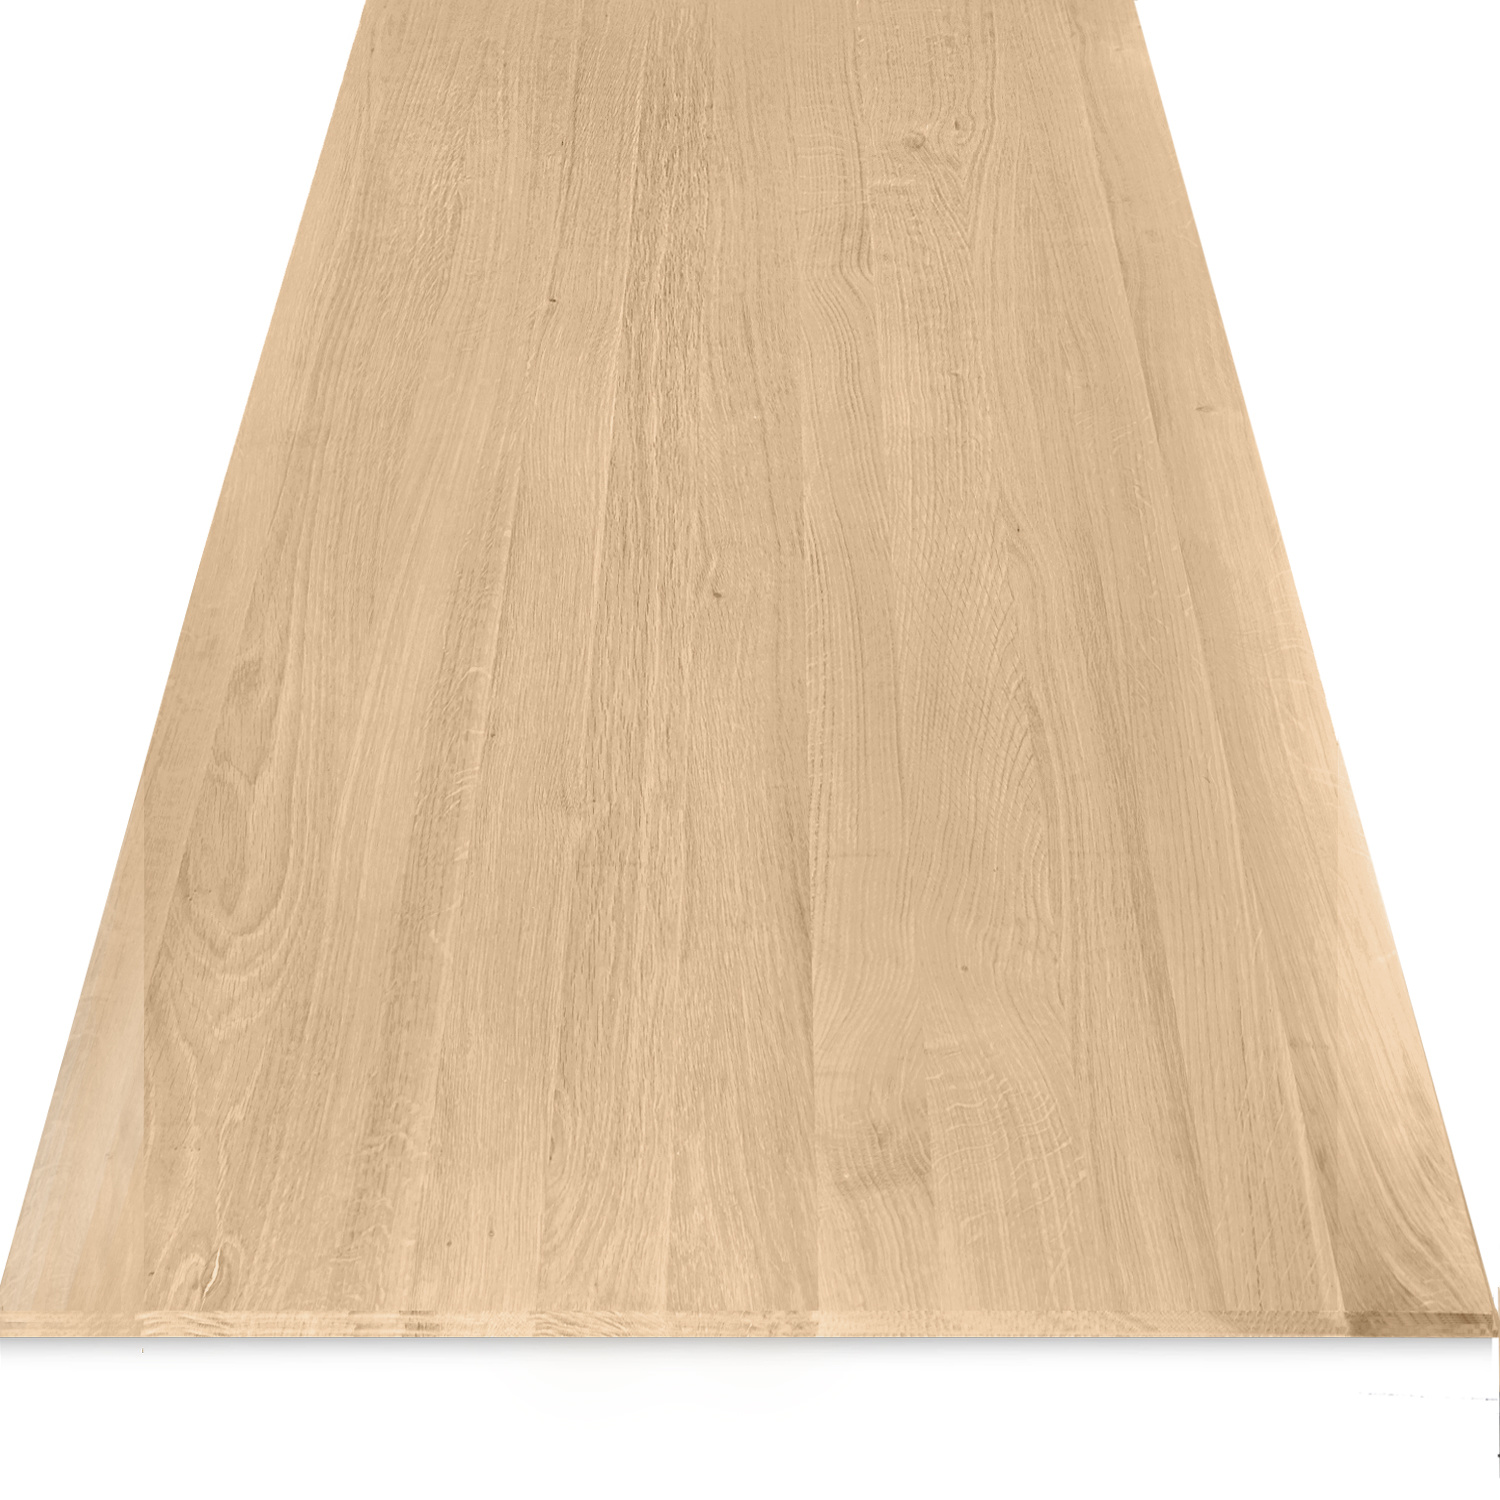  Tischplatte Eiche - Schweizer Kante - nach Maß - 4 cm dick - Eichenholz A-Qualität - Eiche Tischplatte massiv - verleimt & künstlich getrocknet (HF 8-12%) - 50-120x50-230 cm